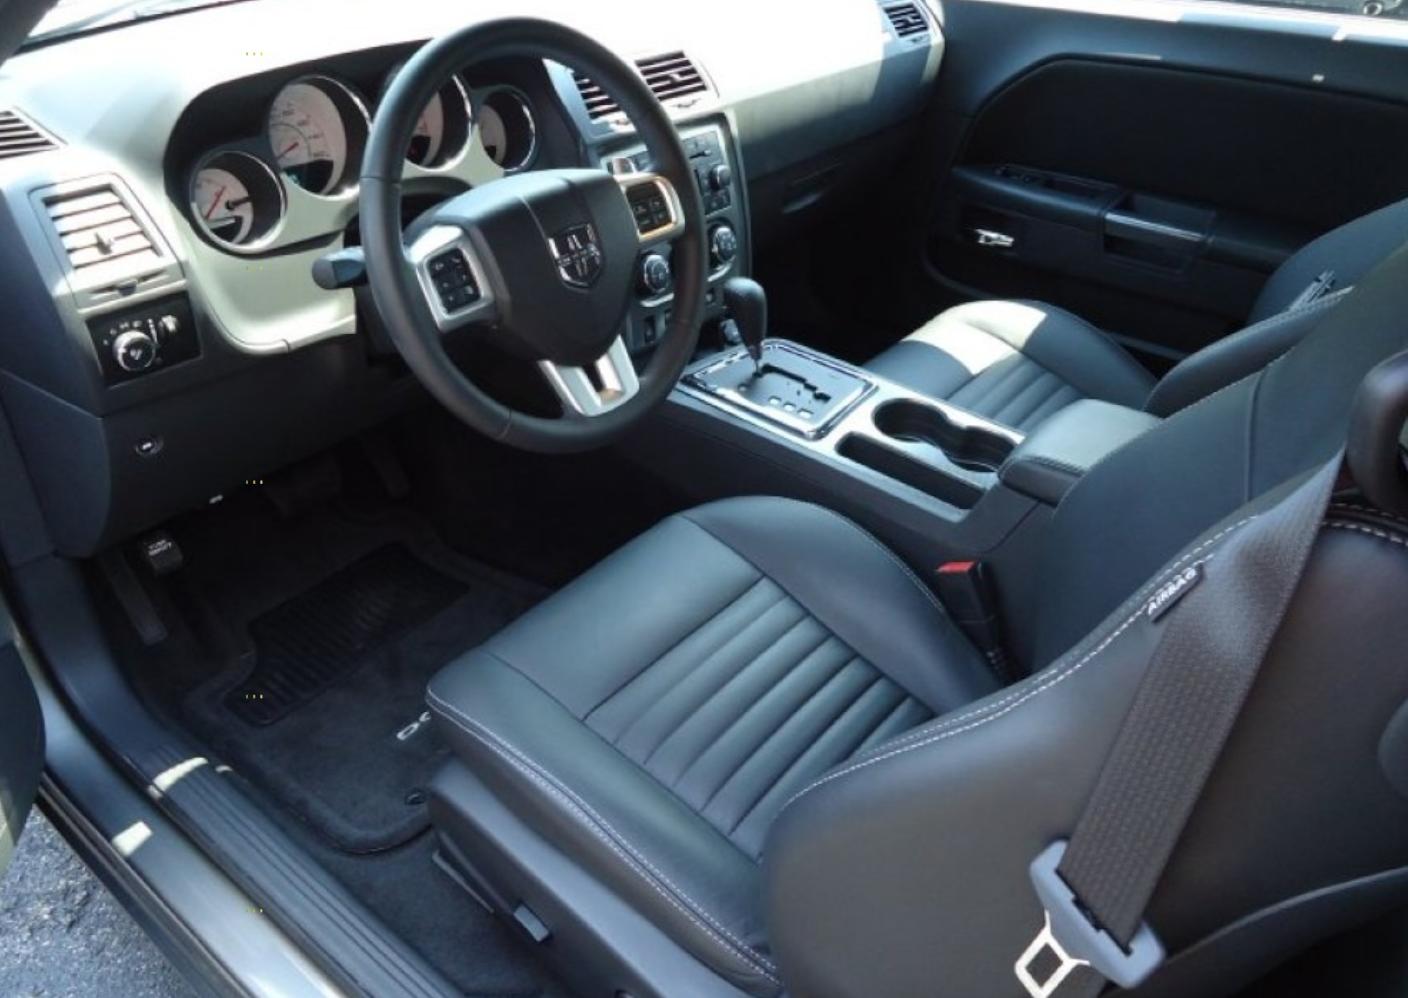 2012 Dodge Challenger interior